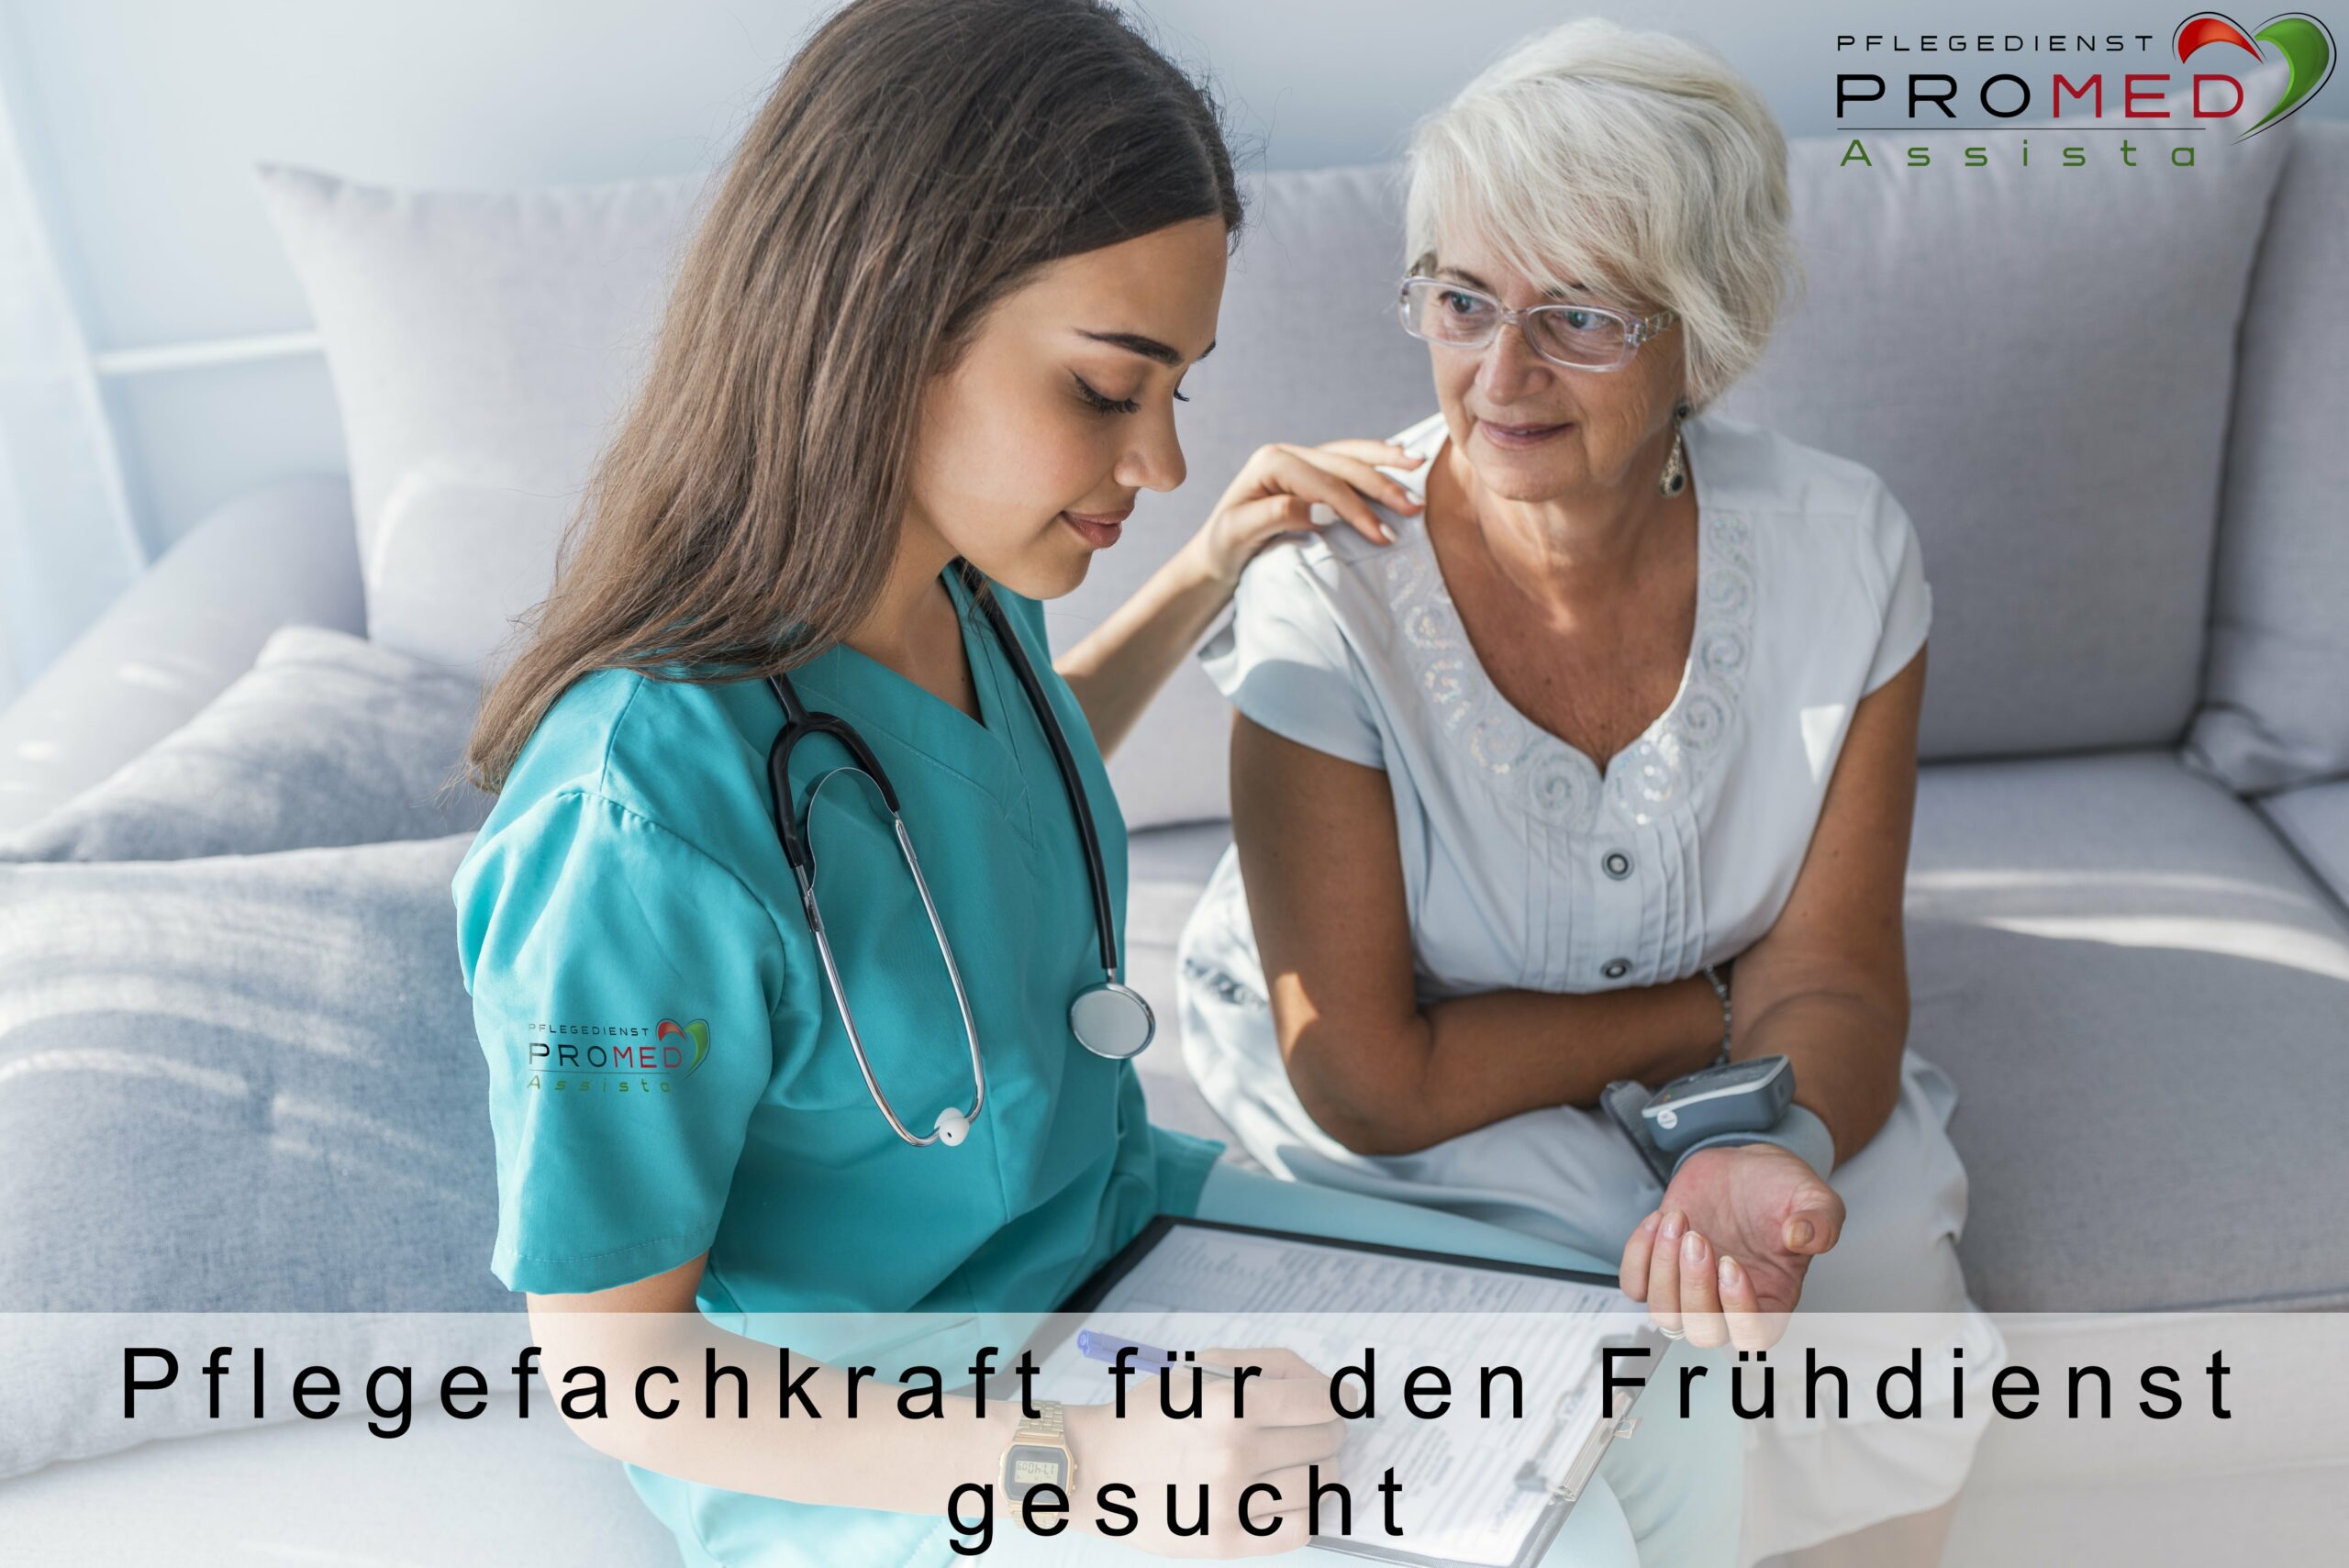 Nur Frühdienst arbeiten - Pflegefachkraft für den Frühdienst in Dietzenbach gesucht